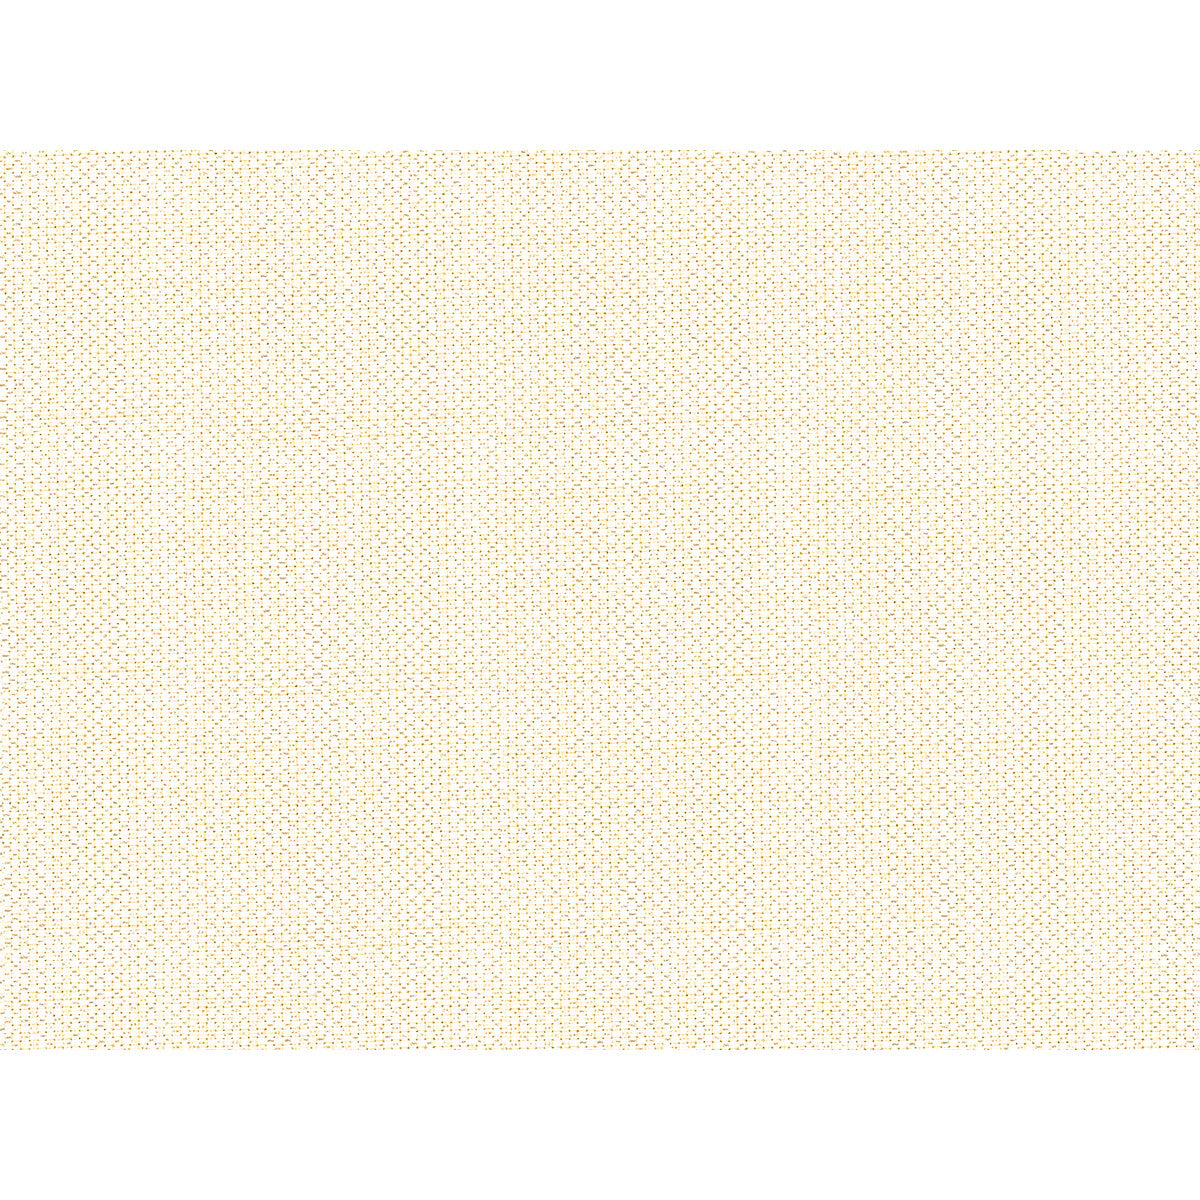 Kravet Basics fabric in 34481-1 color - pattern 34481.1.0 - by Kravet Basics